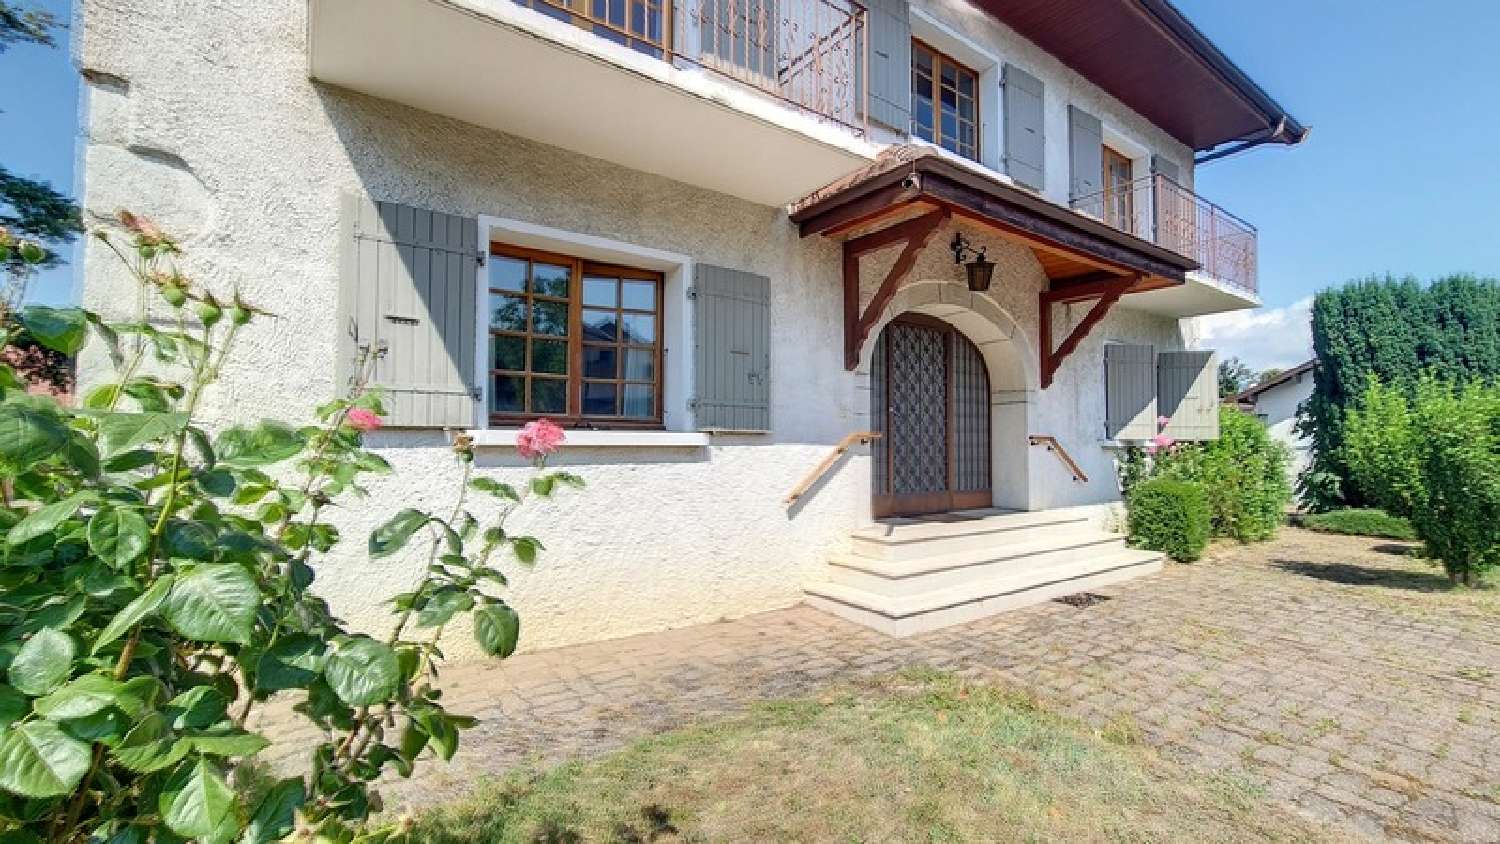  à vendre maison Vulbens Haute-Savoie 2